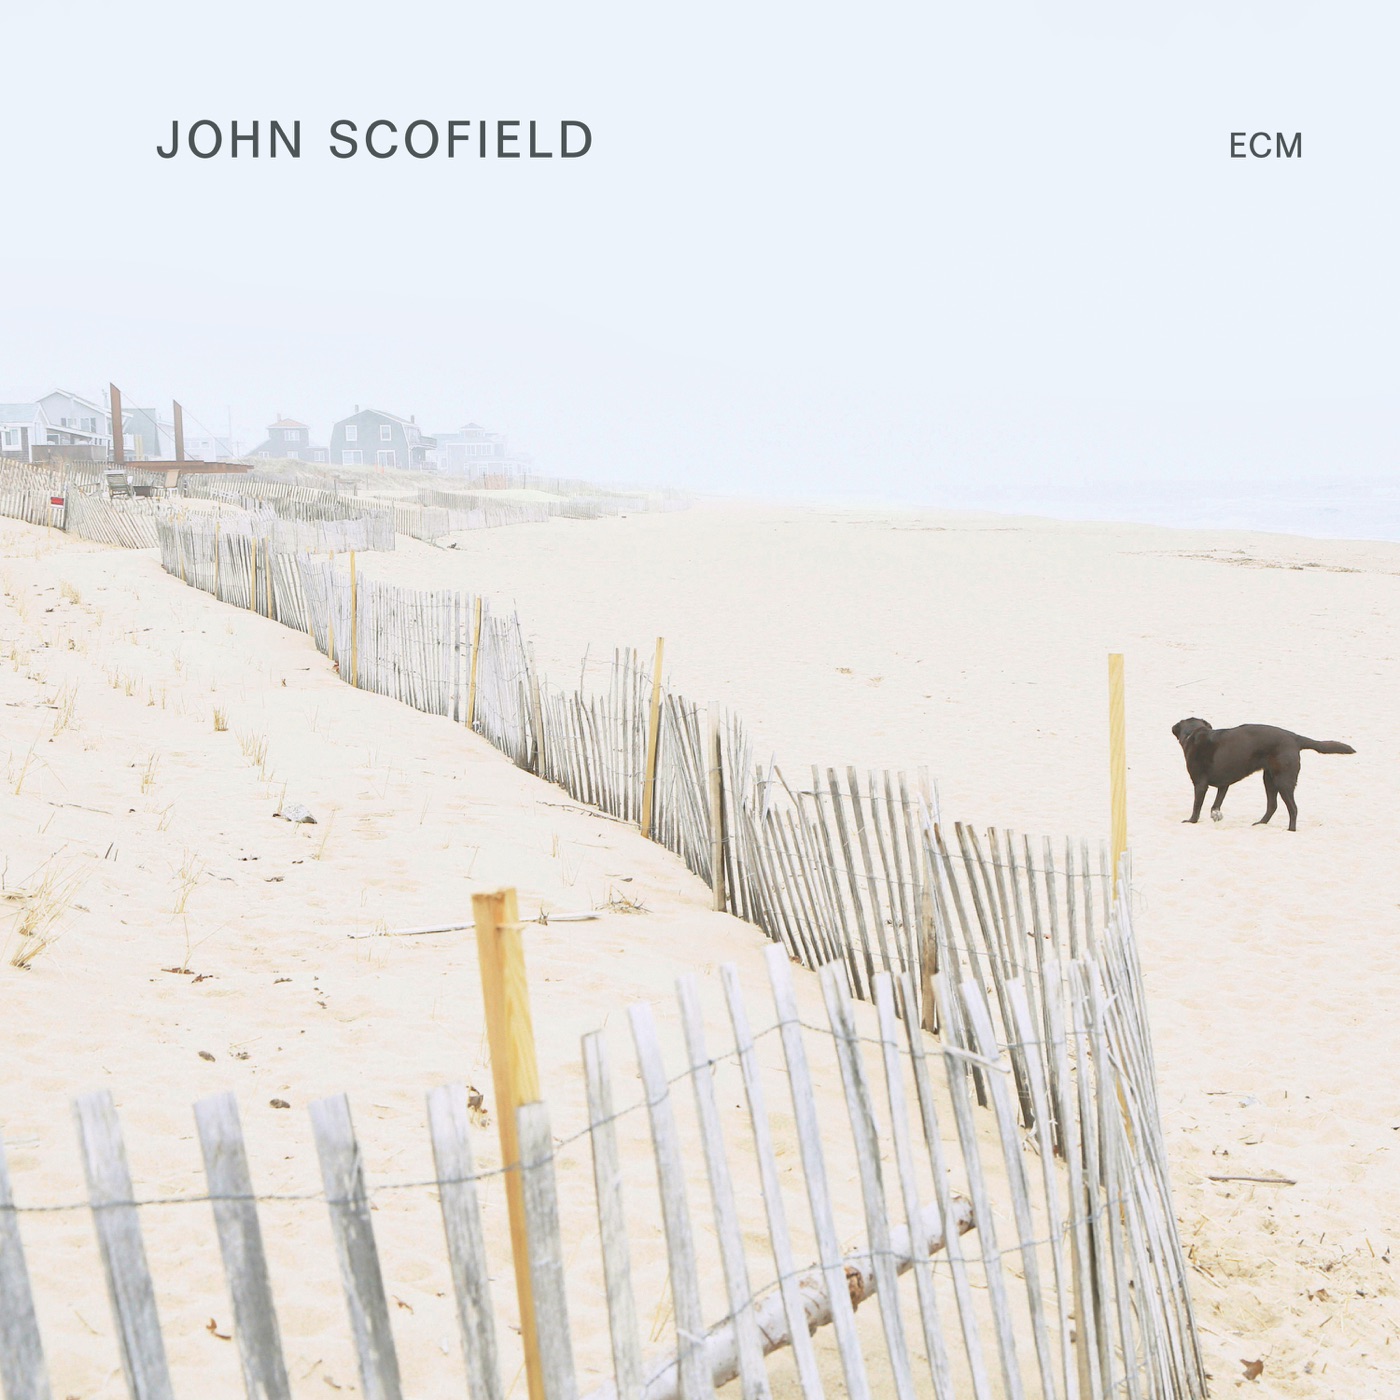 John Scofield by John Scofield